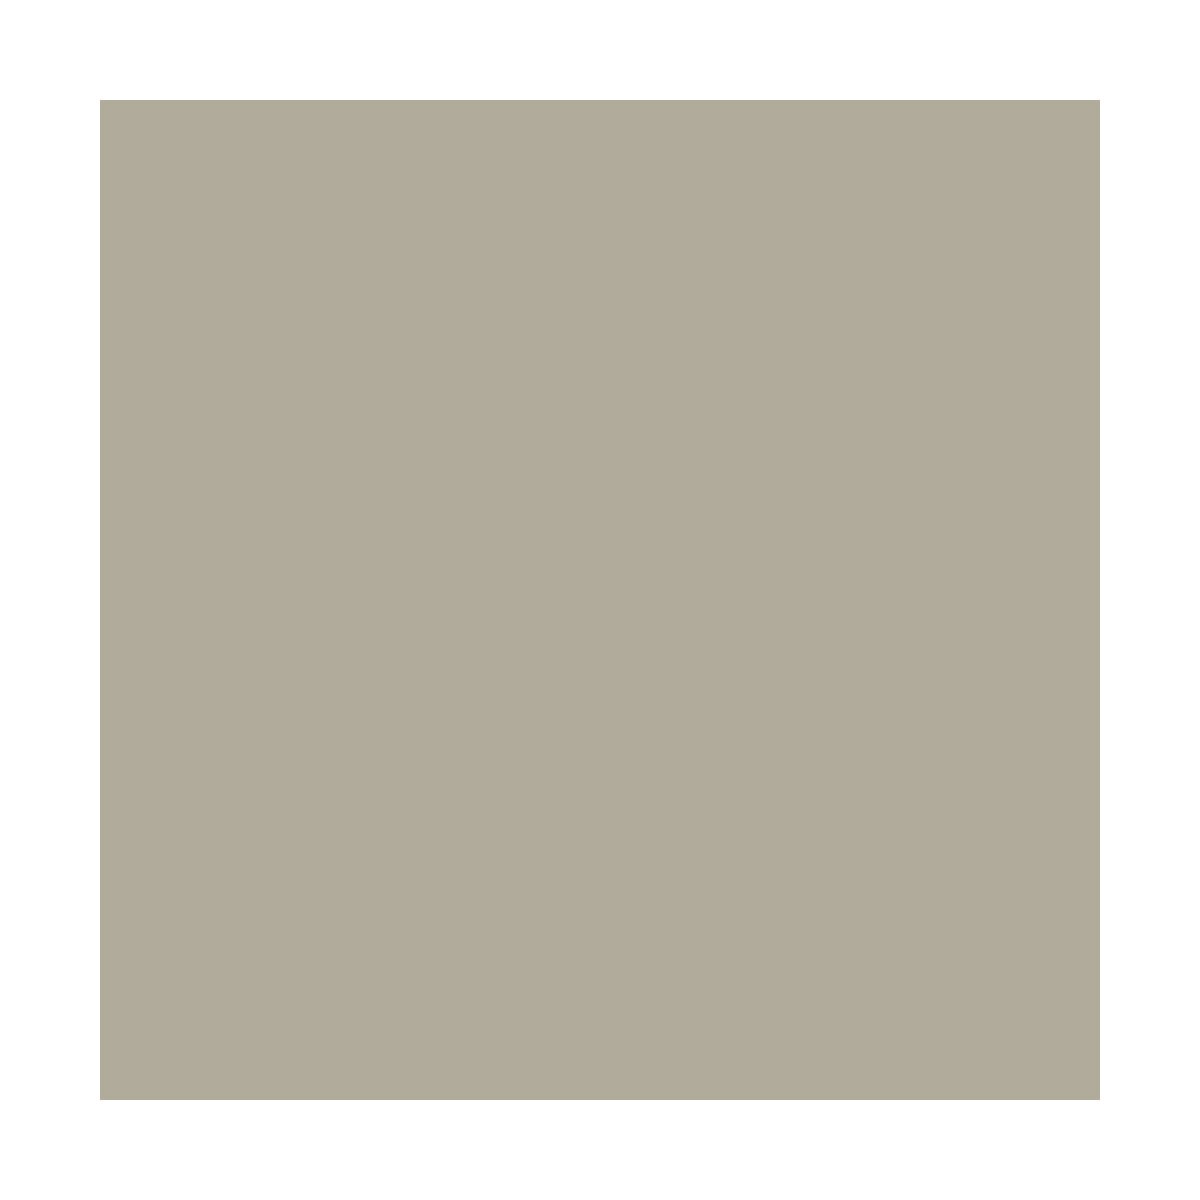 PEINTURE ARGILE naturelle et saine - ARGILIS Marmotte Gris Cendre - 30 m² (5 kg en 1 couche)ARCANE INDUSTRIES 3